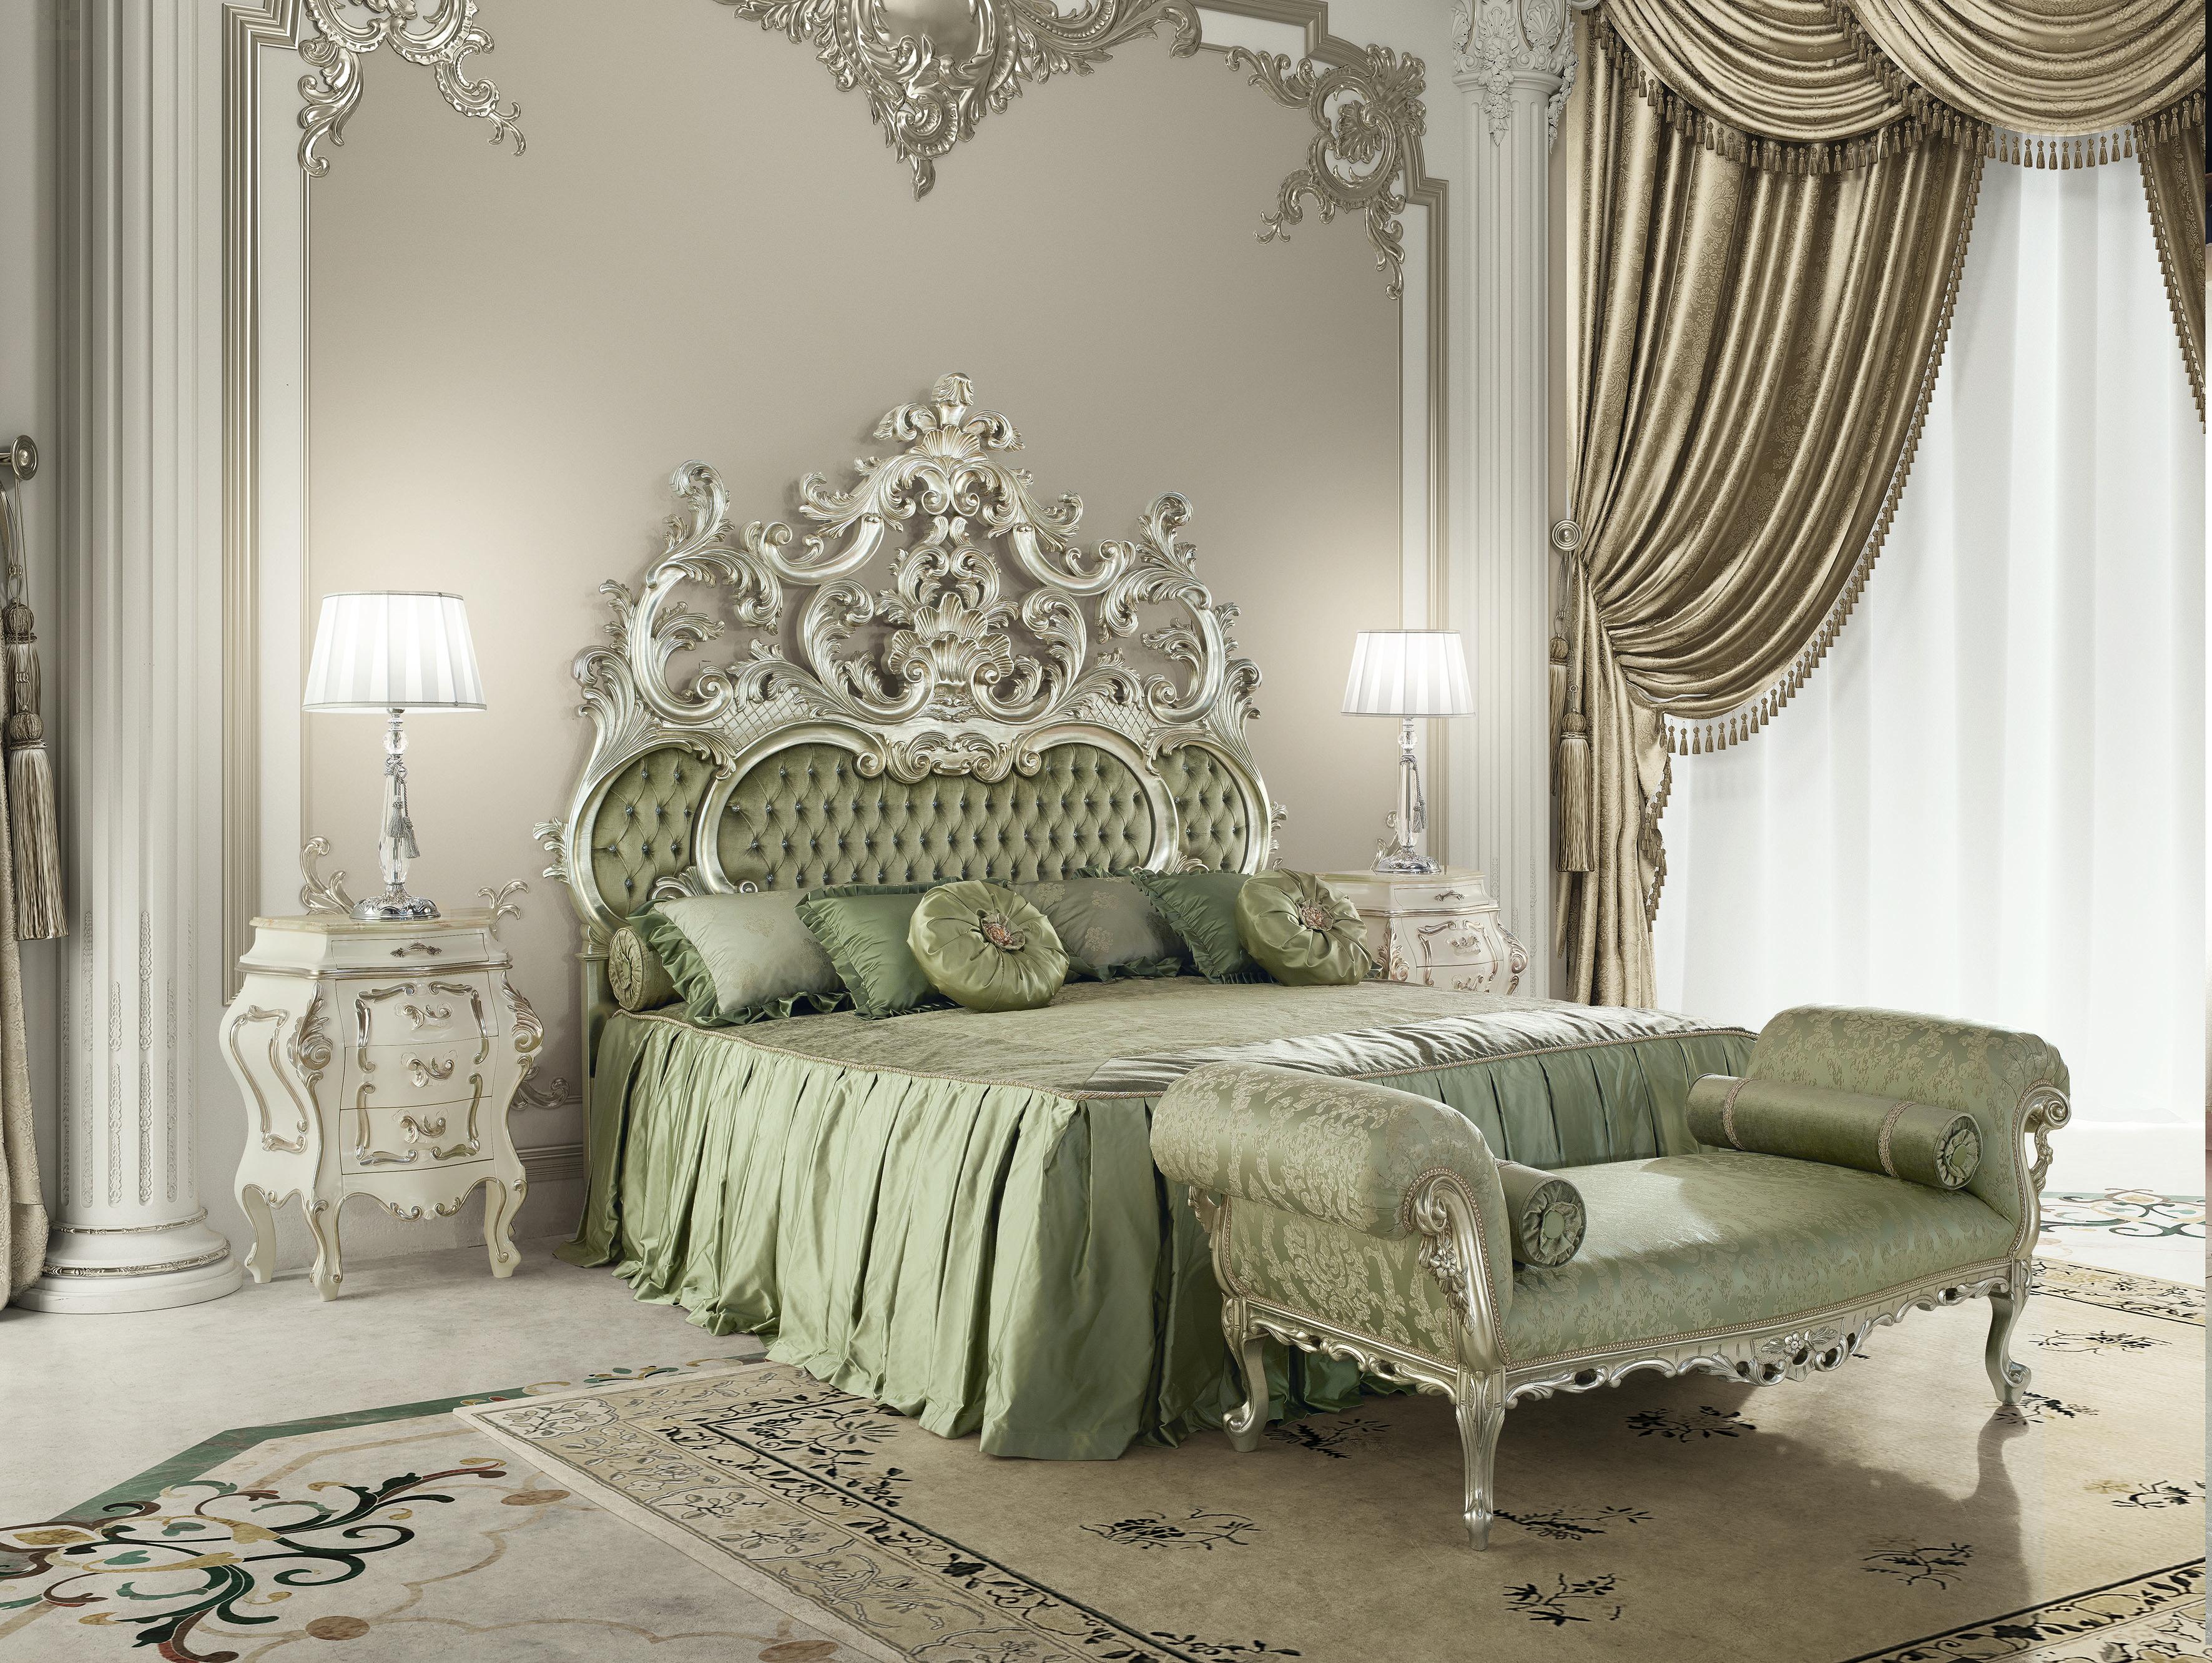 Ce banc de lit baroque blanc de Modenese Luxury Interiors, fabricant italien de meubles, est une pièce superbement élégante et confortable pour un décor classique, à mettre en valeur dans les salons, les chambres à coucher, les salles de séjour ou